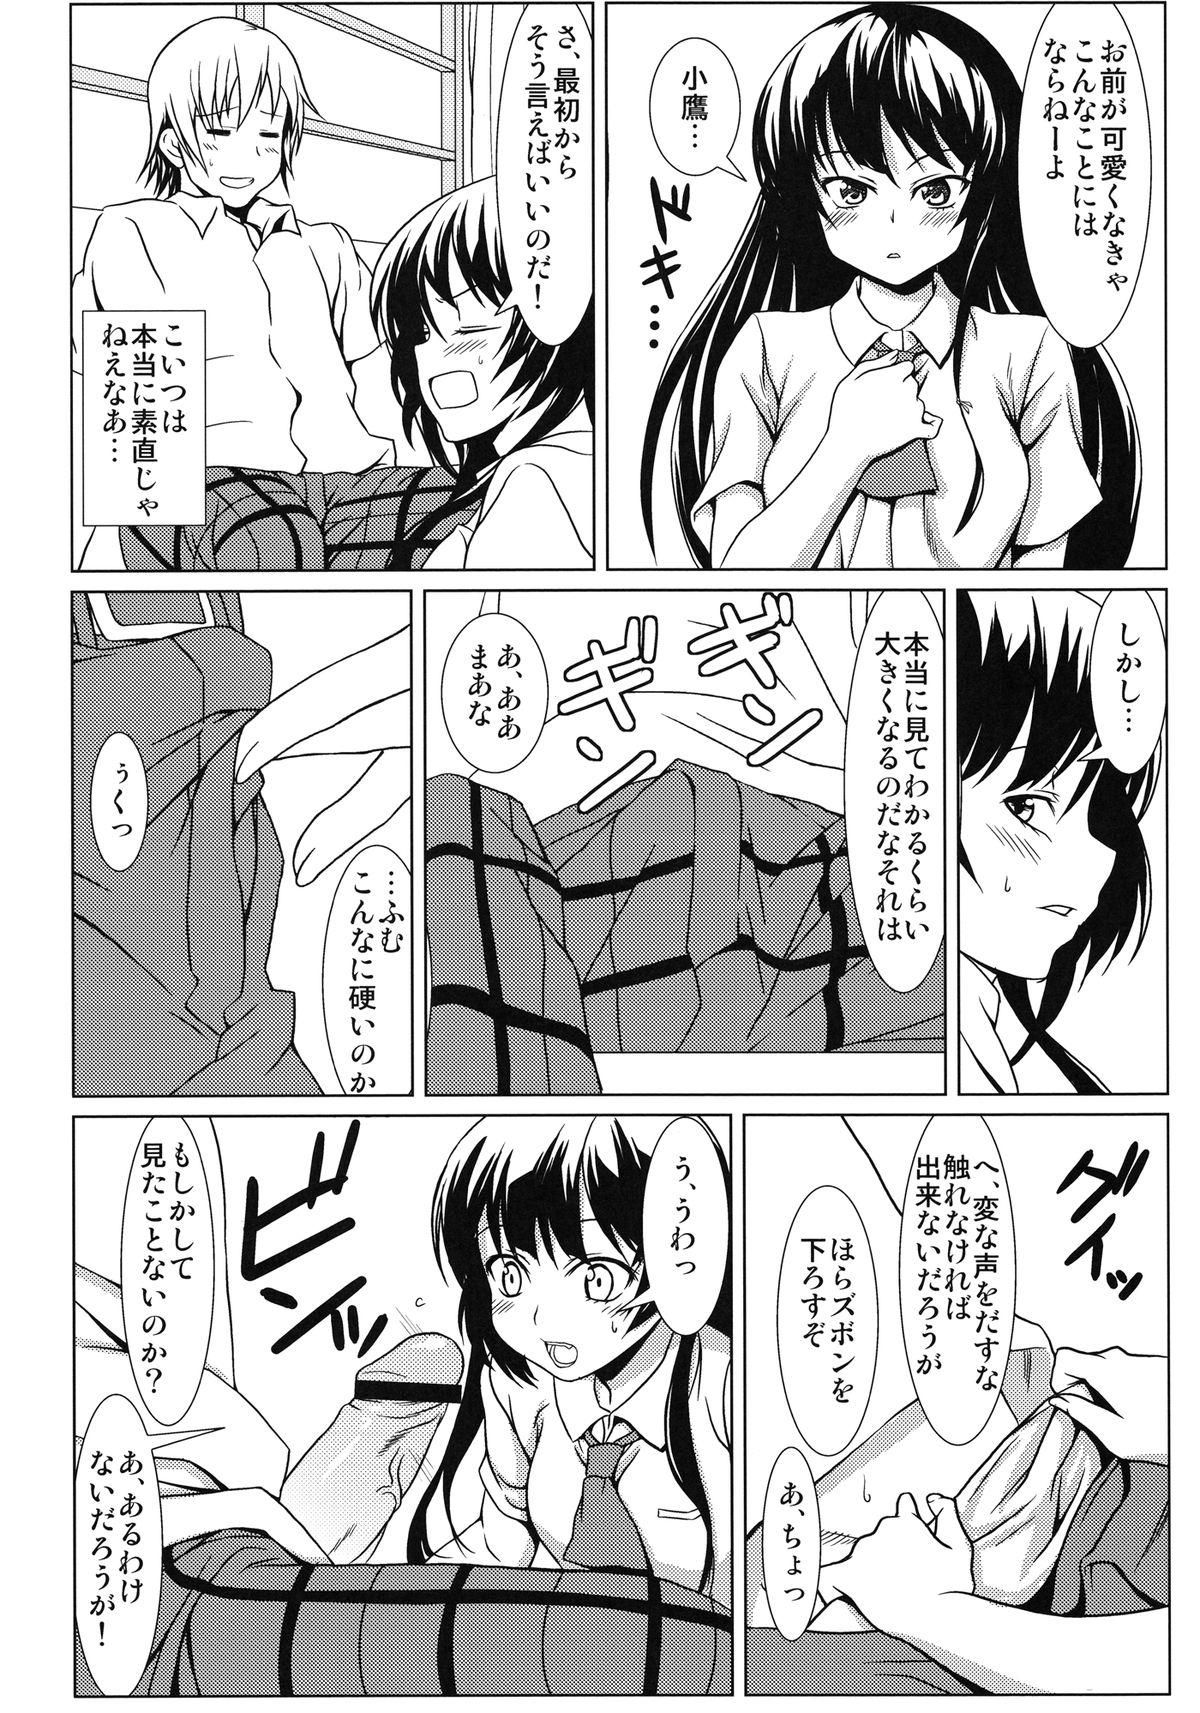 Riding Yozora no Mukou - Boku wa tomodachi ga sukunai Teenage Sex - Page 8